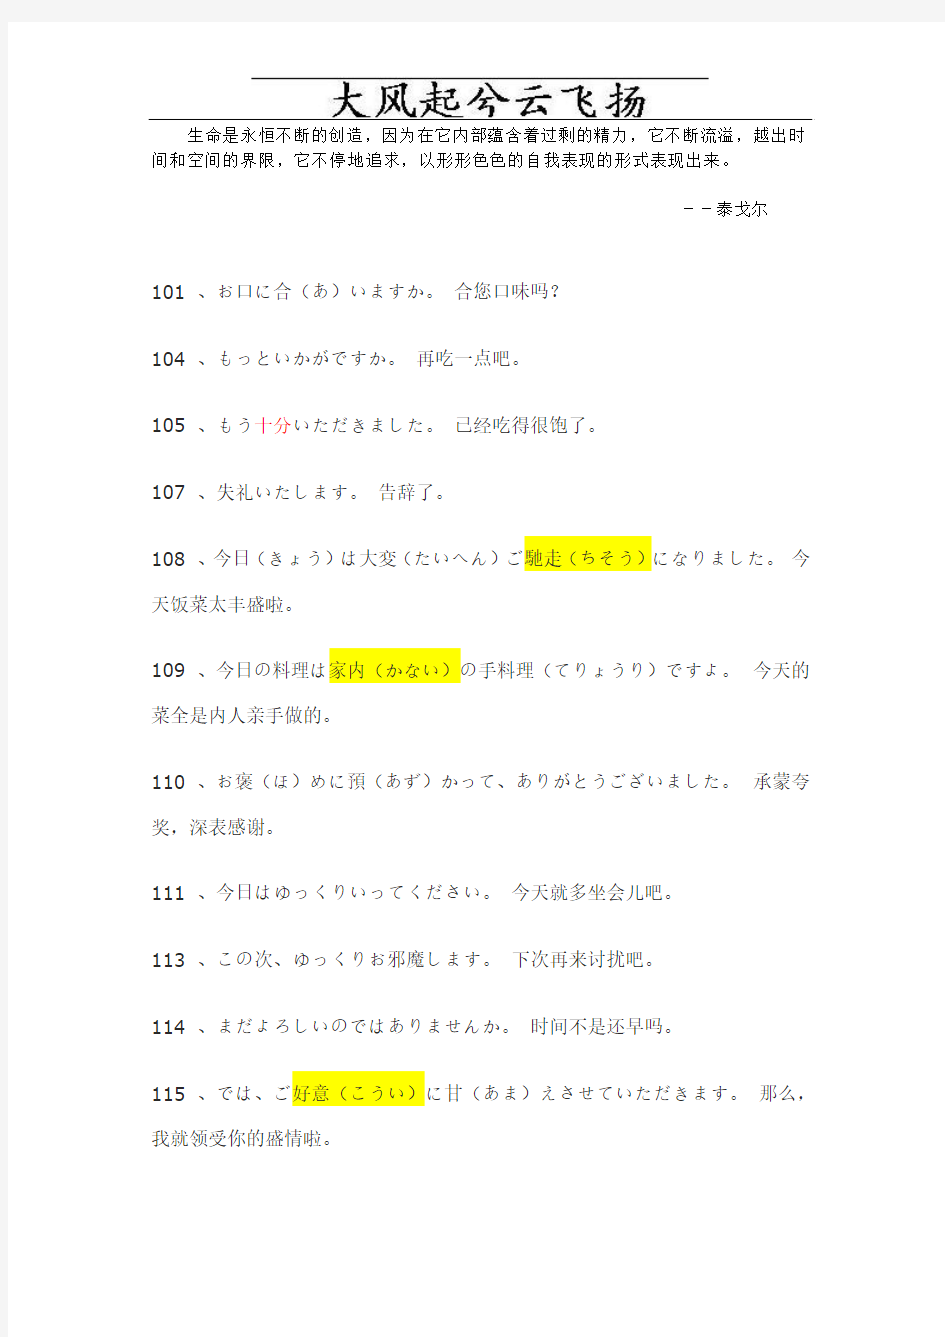 Tqztir日语常用会话1000句(101-200)